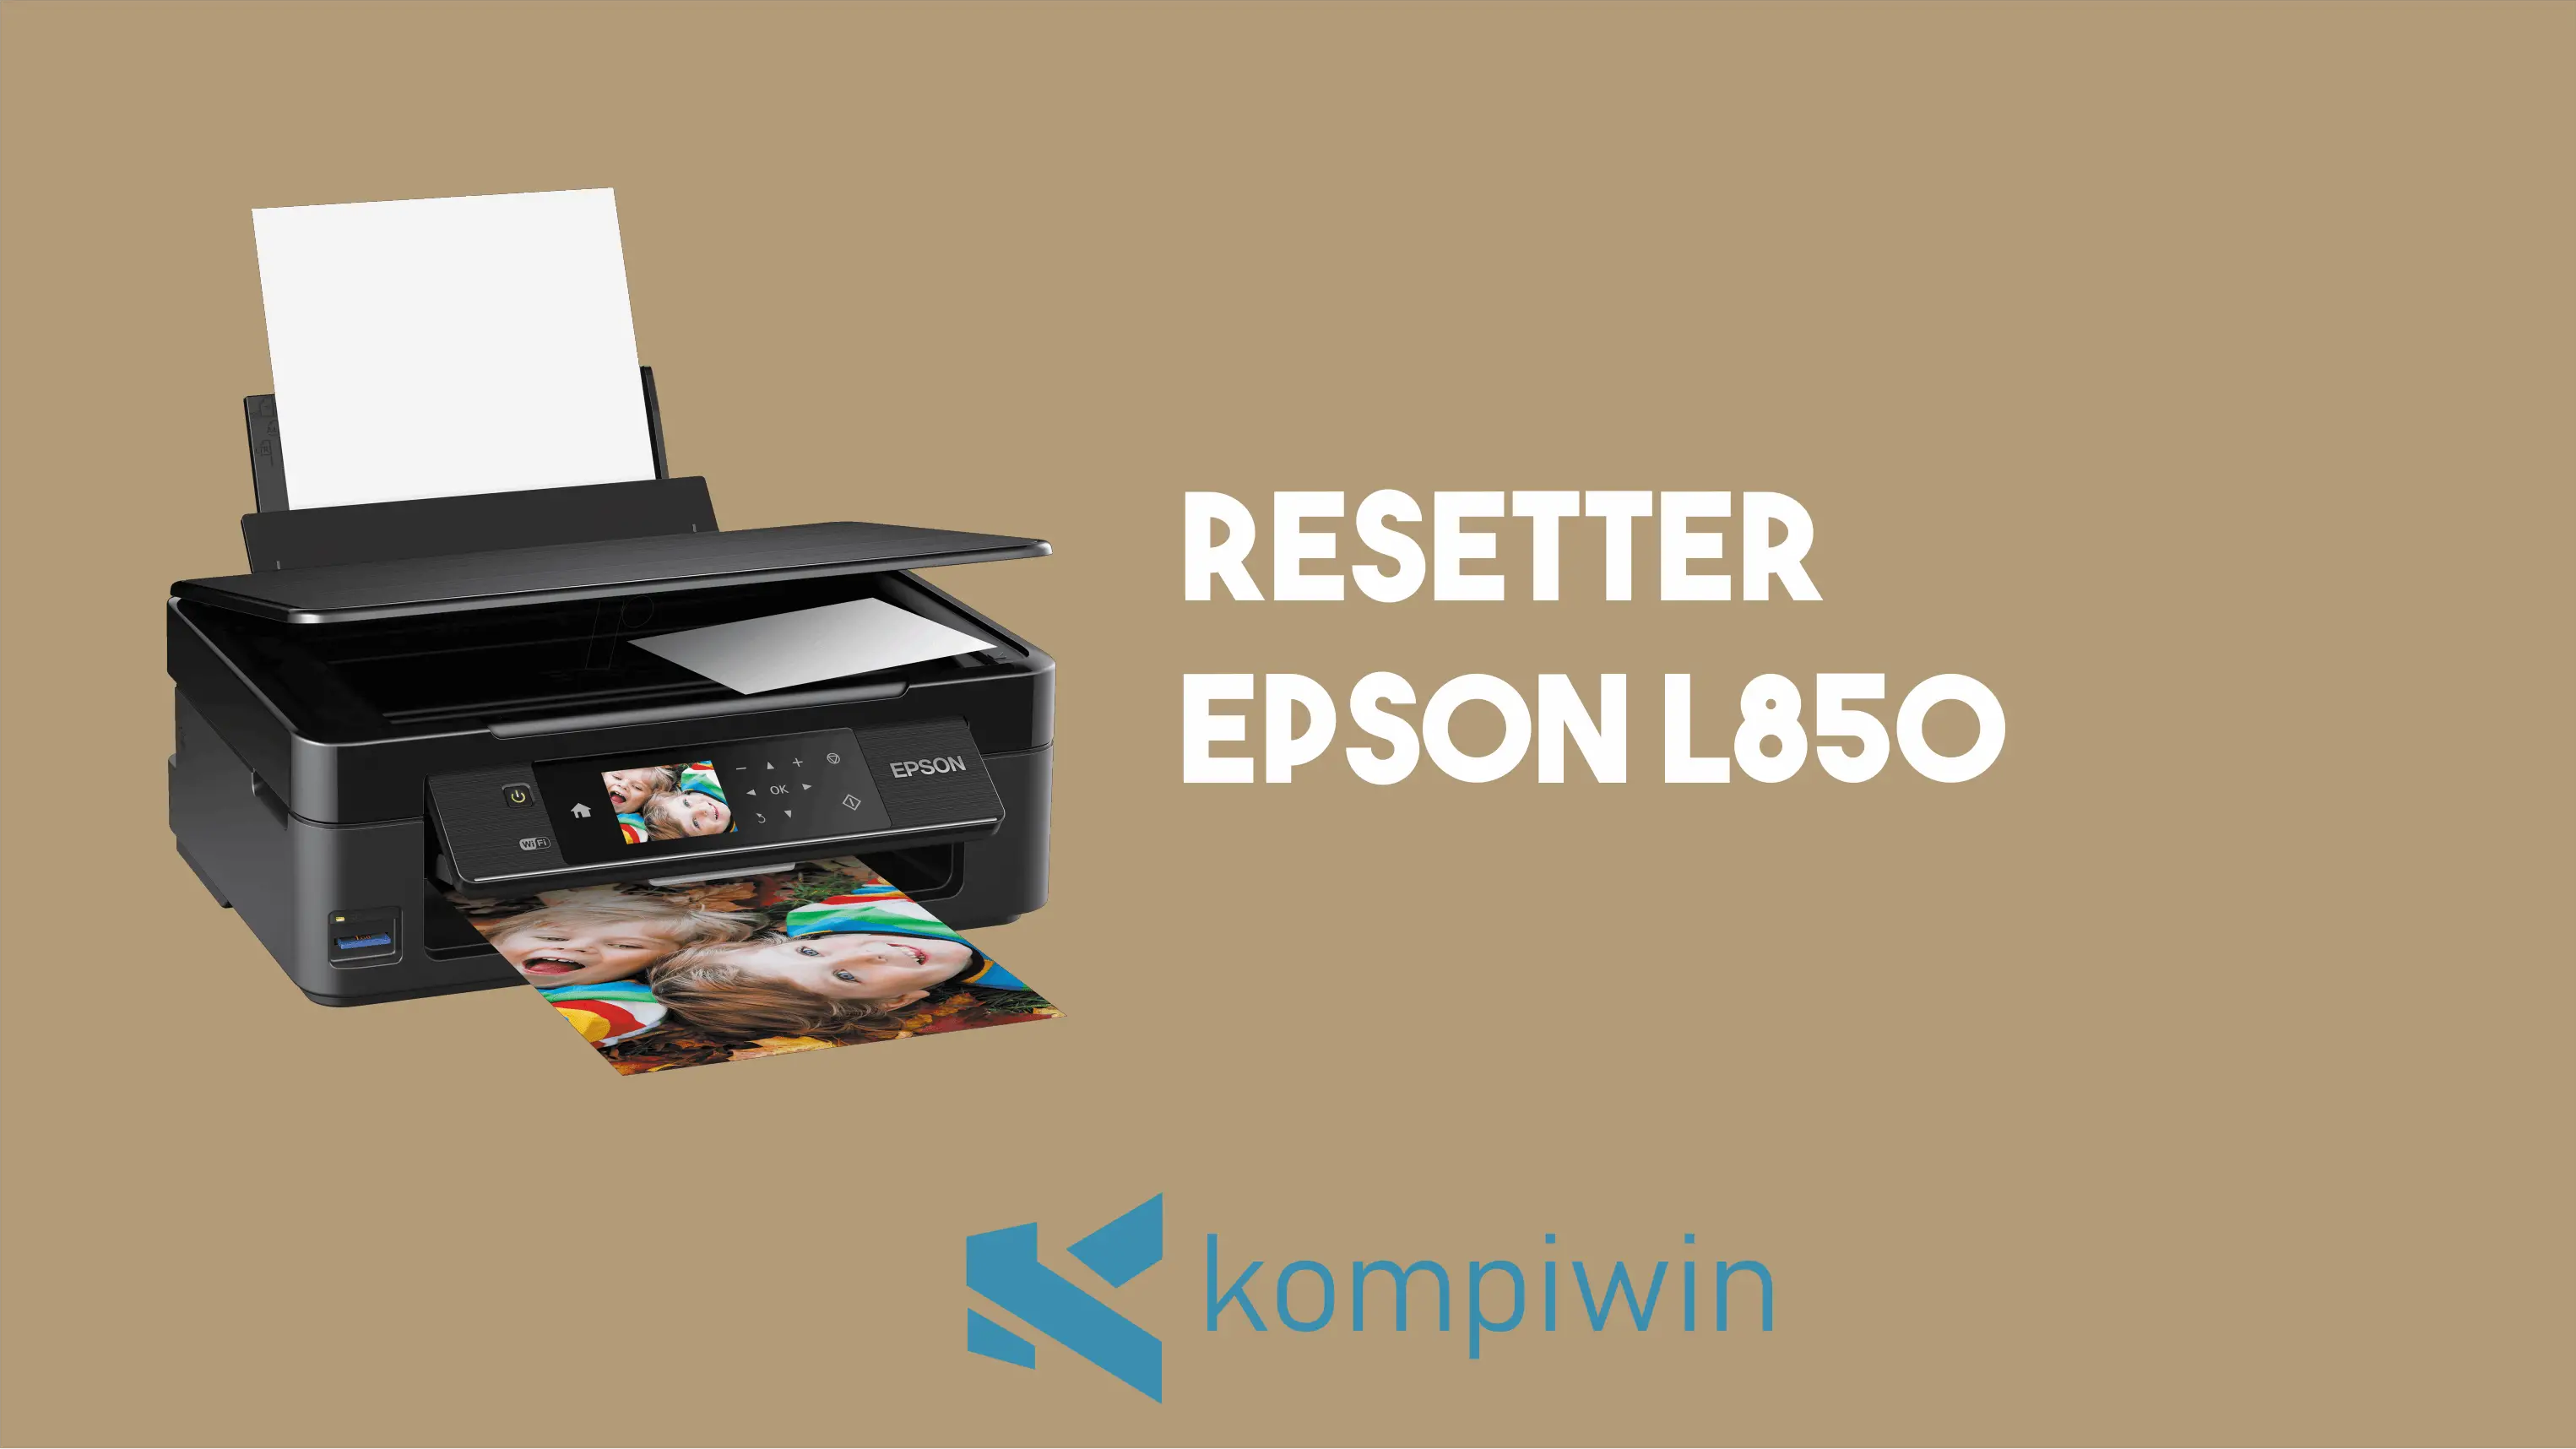 Resetter Epson L850